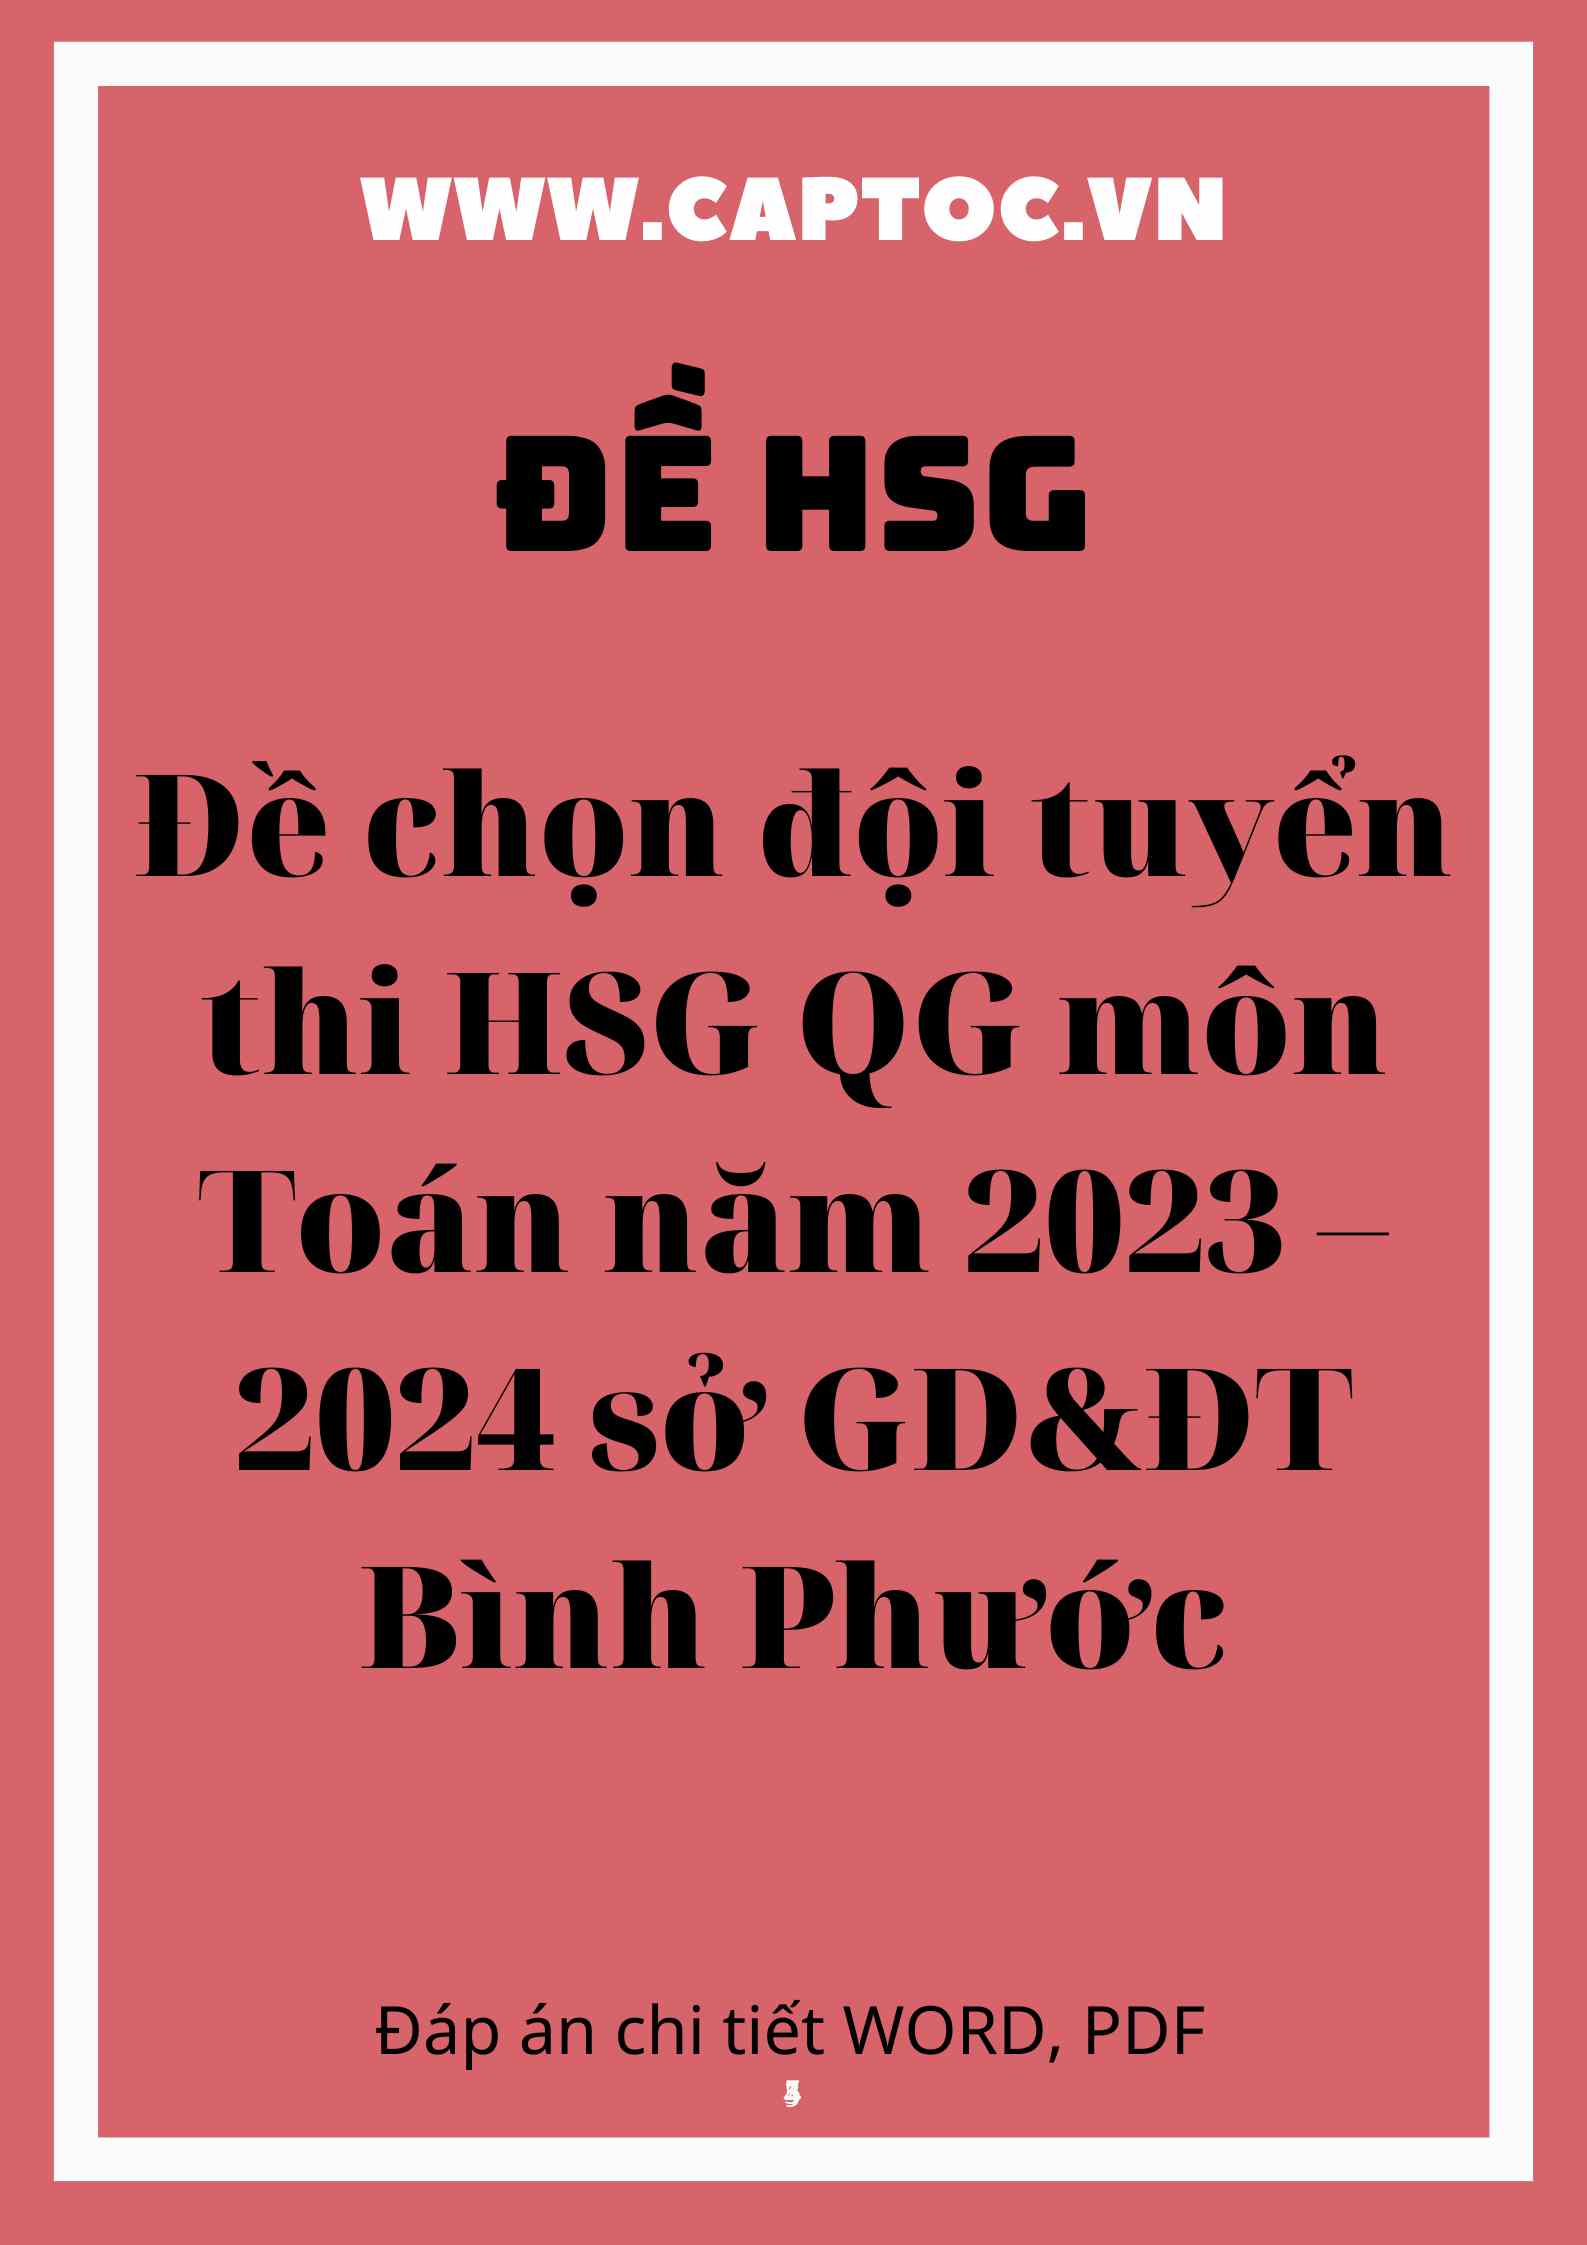 Đề chọn đội tuyển thi HSG QG môn Toán năm 2023 – 2024 sở GD&ĐT Bình Phước